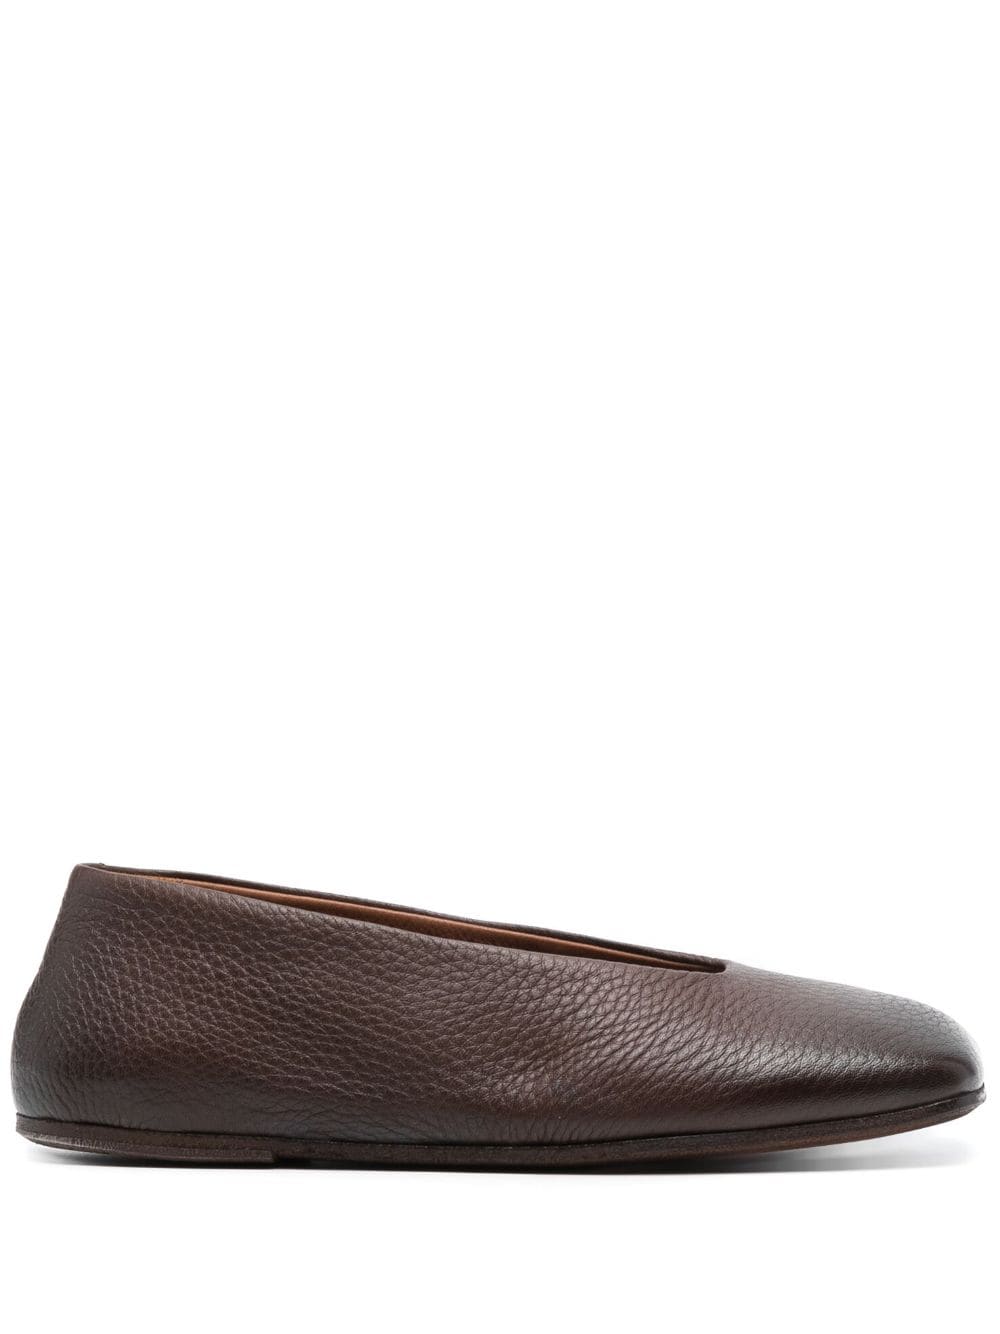 Marsèll - Spatolona Square-toe Ballerina Shoes - Women - Calf Leather/Calf Leather/Calf Leather - 35 - Brown